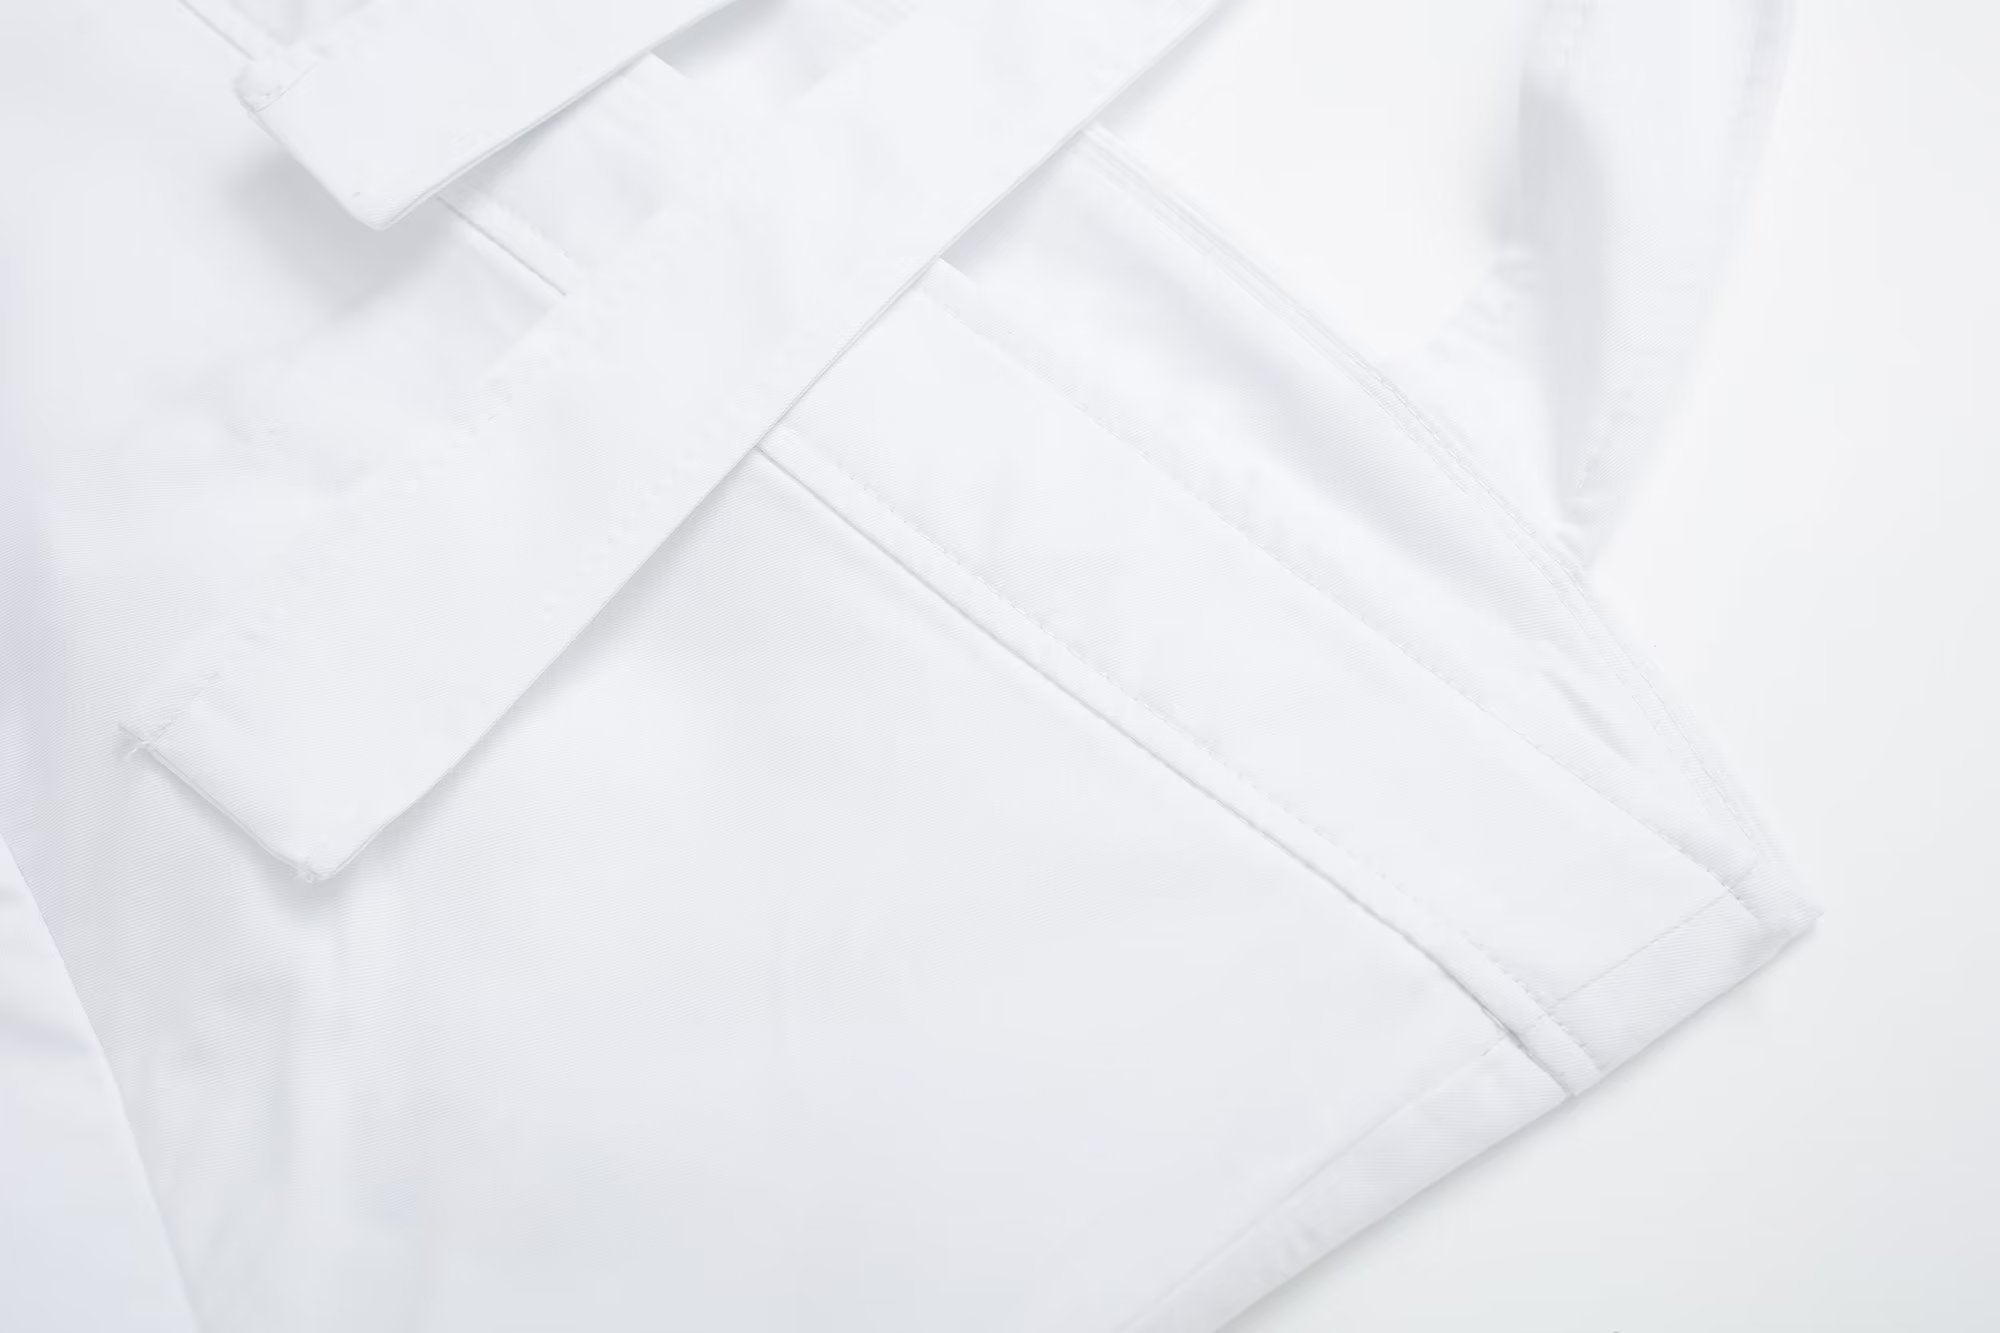 Spring Women Clothing Halterneck off-Shoulder Solid Color Hem Irregular Asymmetric Vest Top